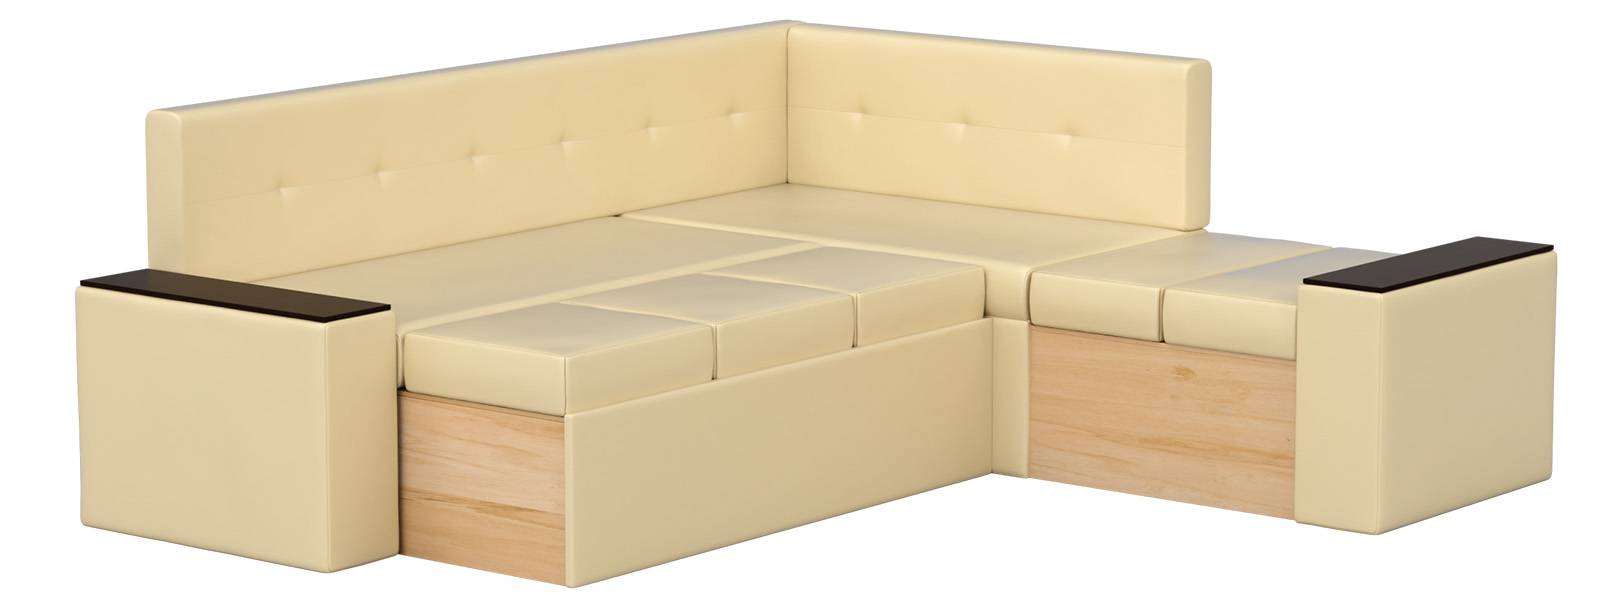 Популярные модели диванов "икеа" для кухни, характеристики угловых и обычных конструкций